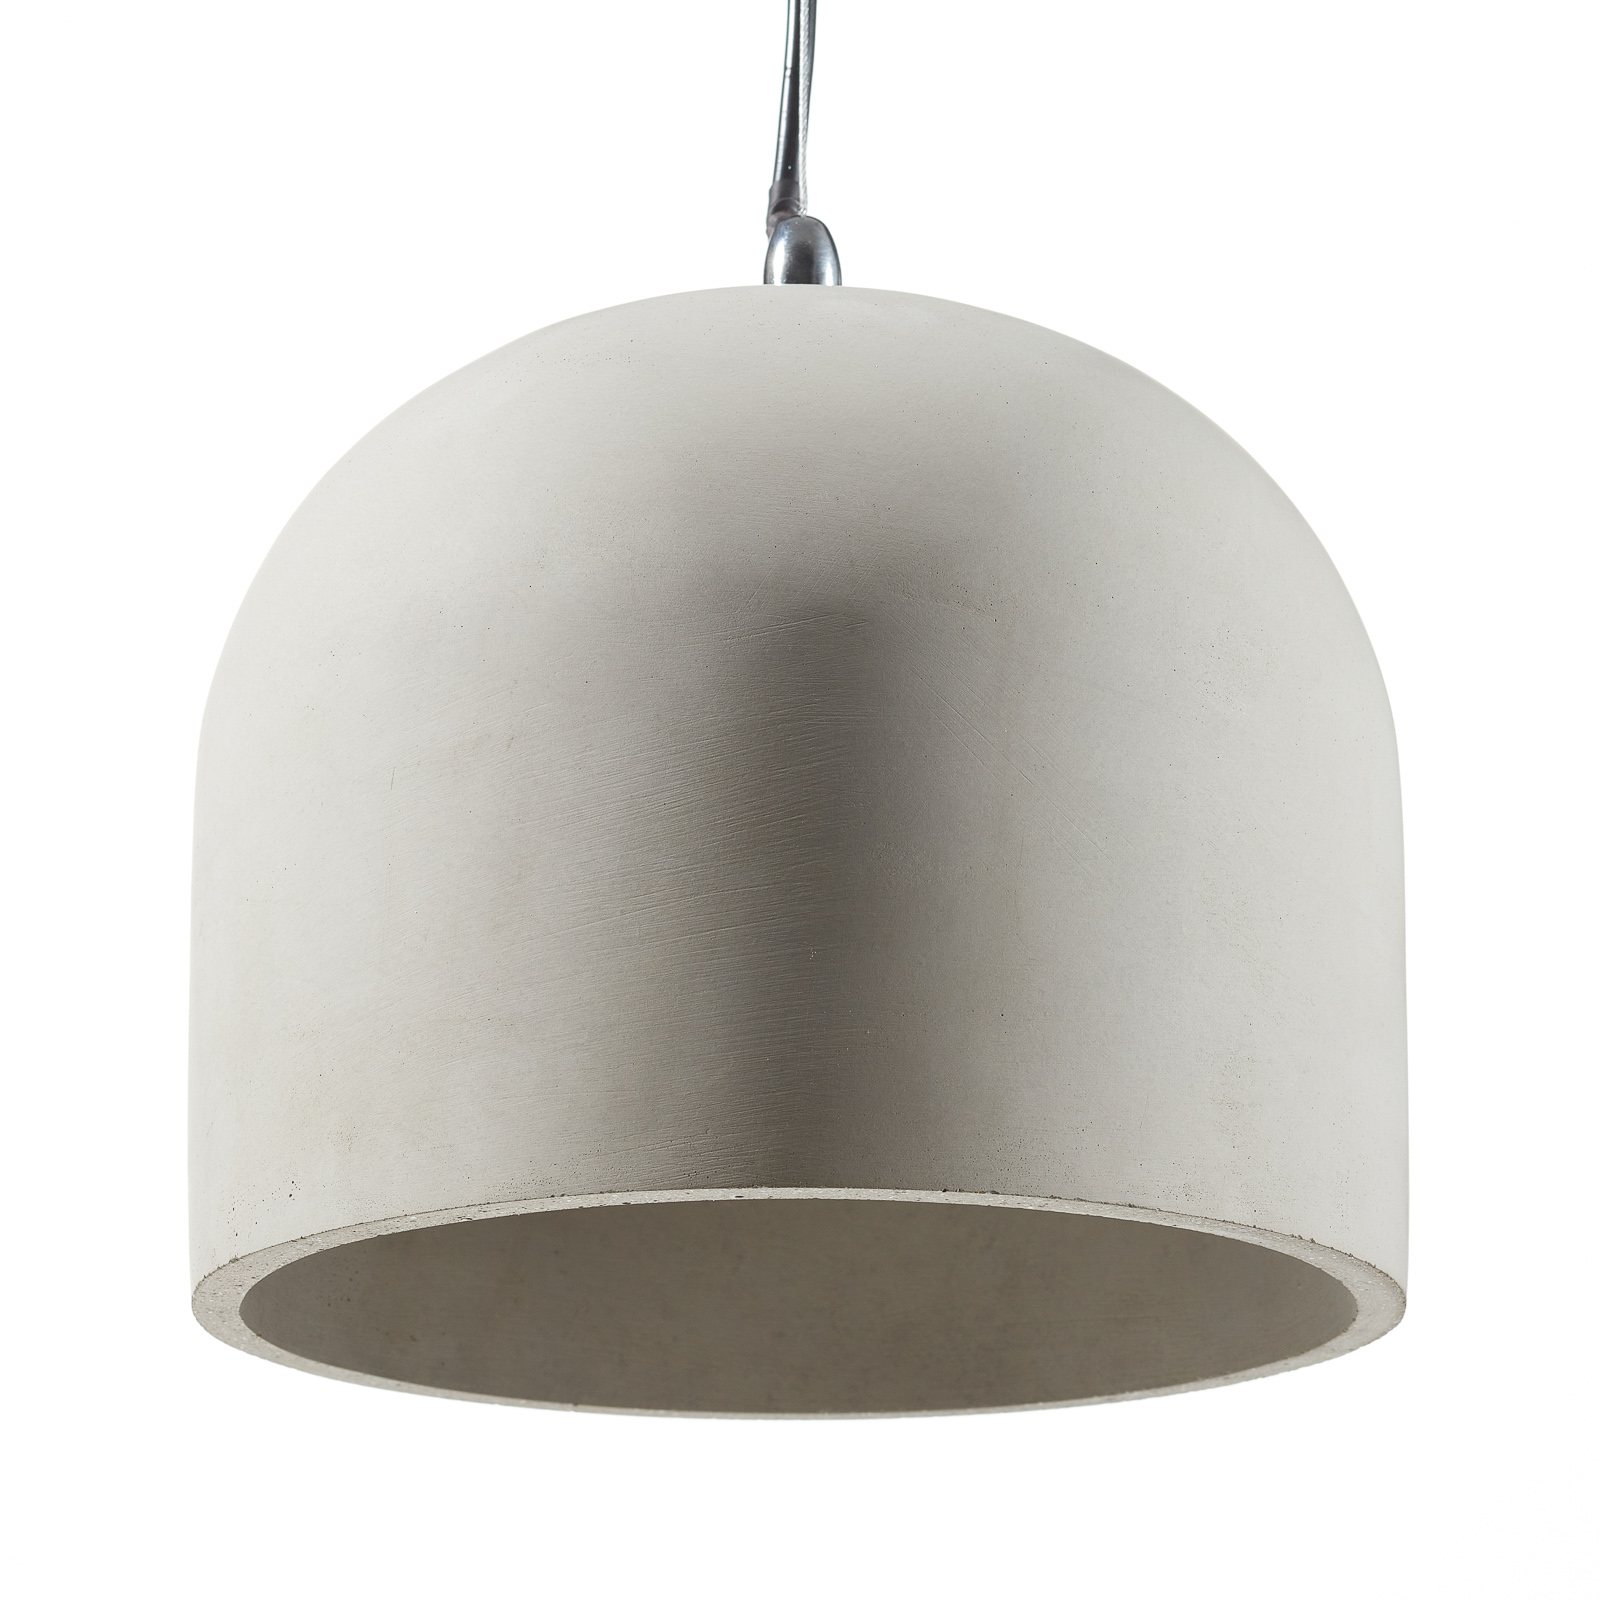 Hanglamp Broni van beton, Ø 20 cm